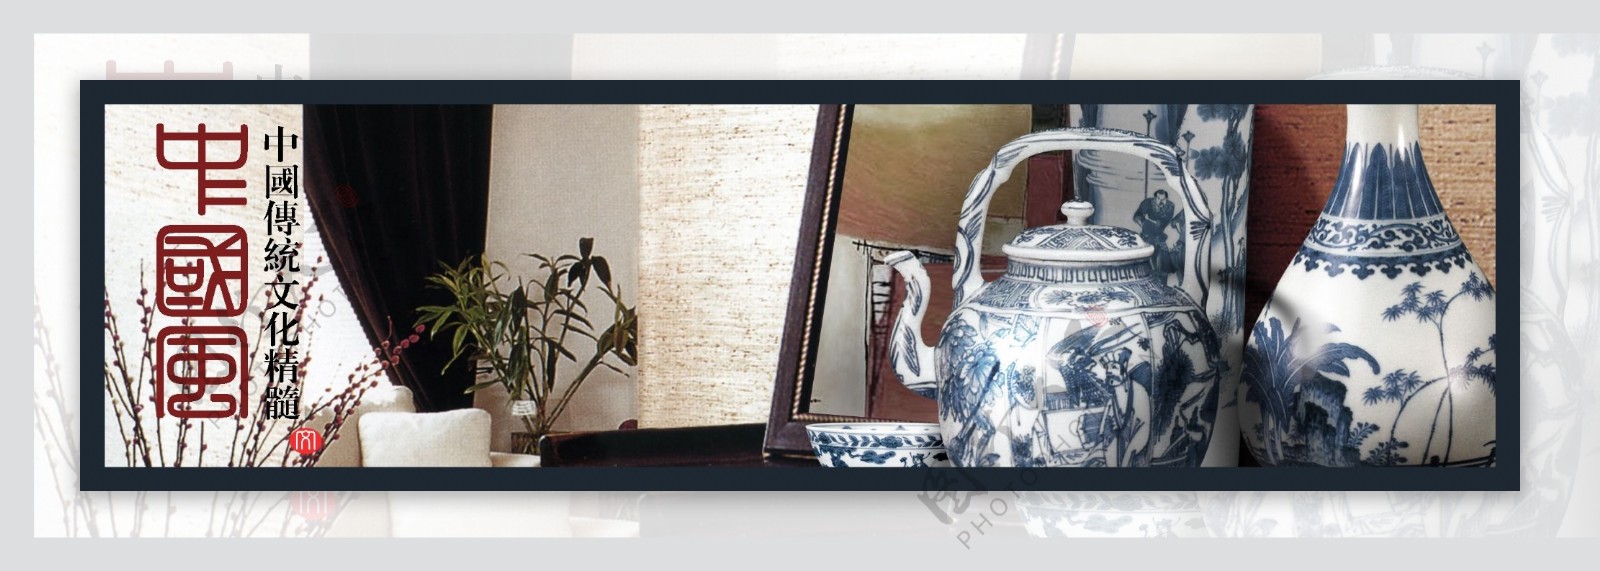 地产档案房地产psd源文件中国风古建筑鼓中国传统陶瓷瓷器相框沙发